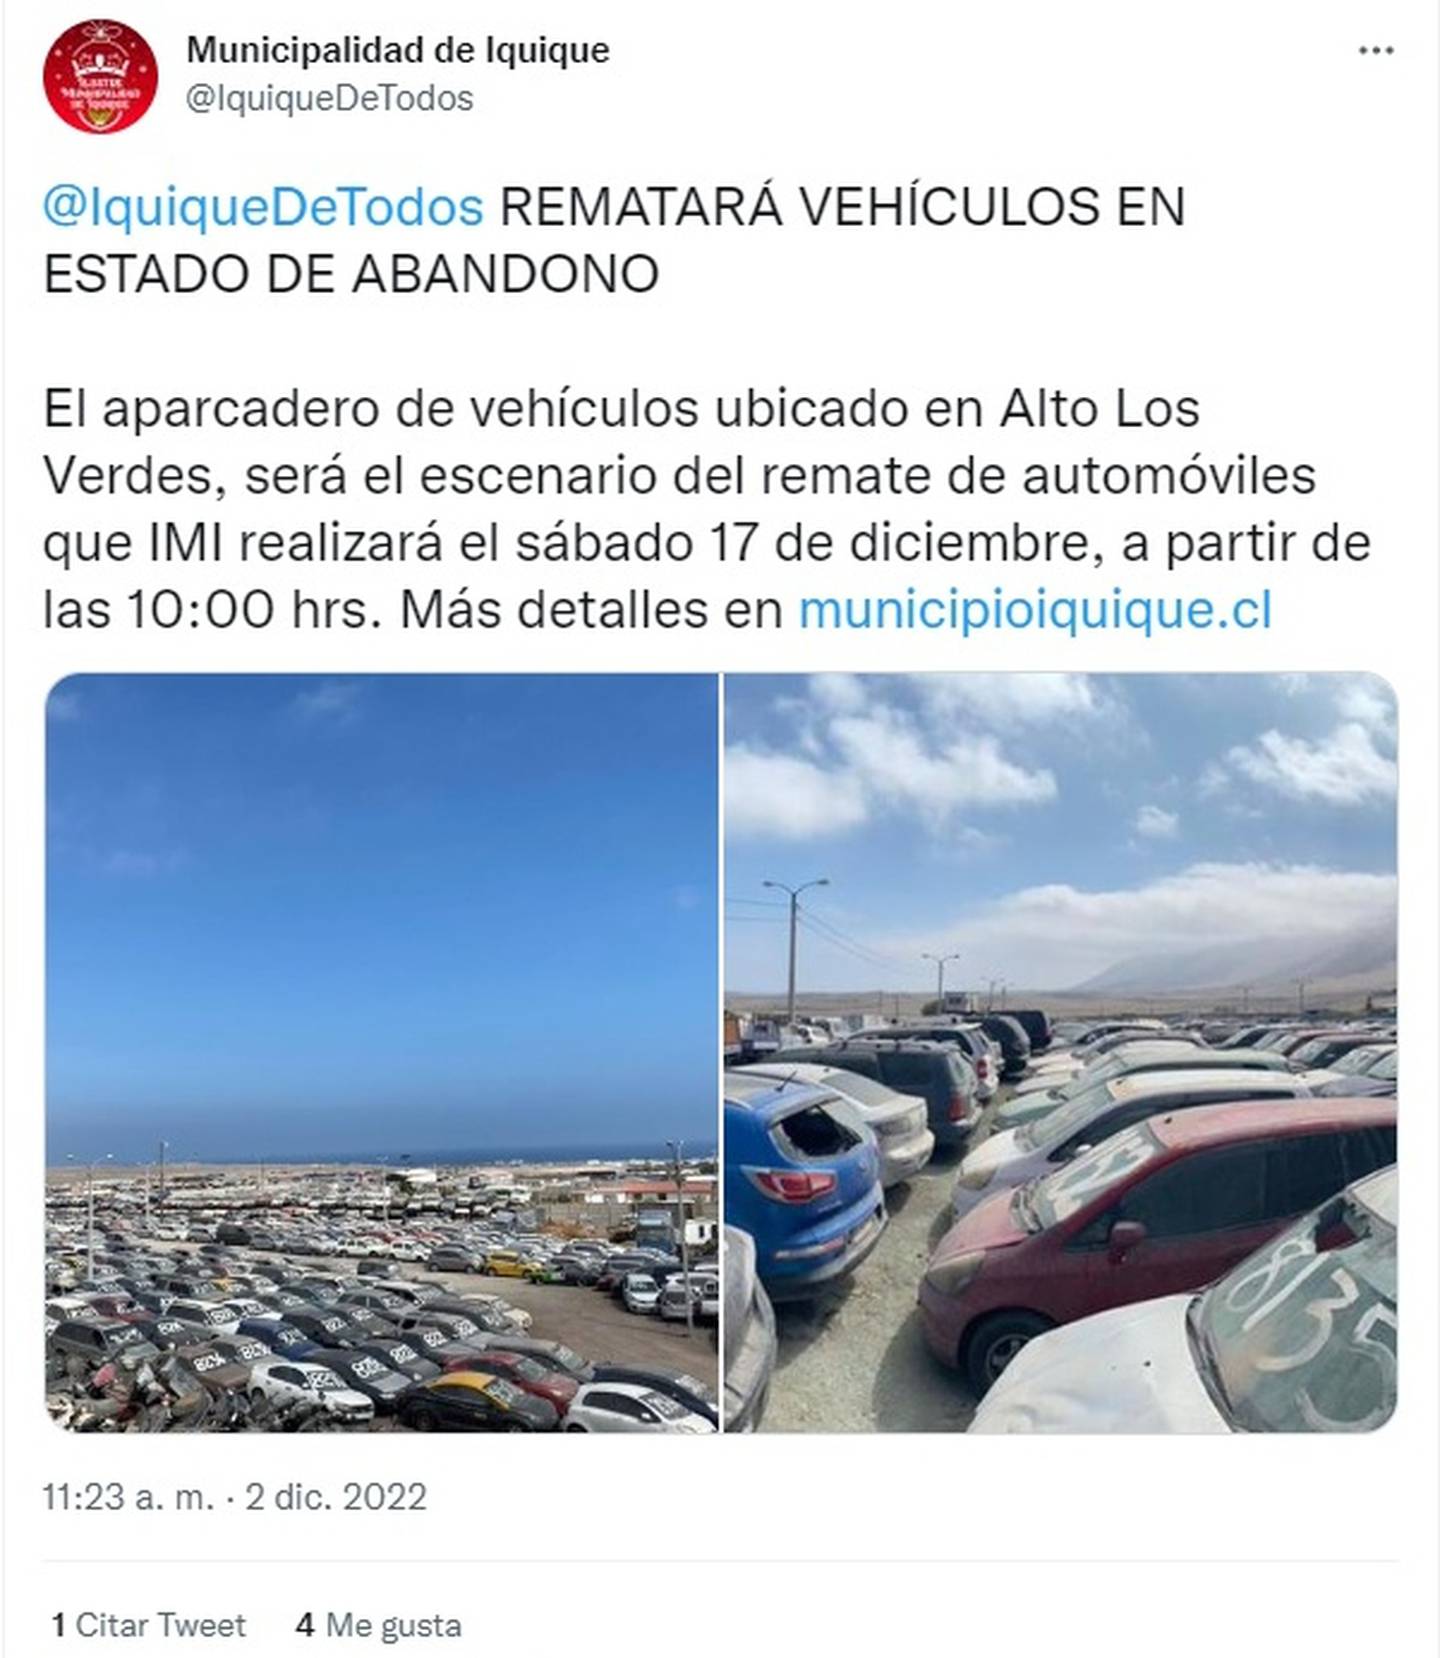 El próximo sábado 17 de diciembre se realizará el remate de los vehículos abandonados en Iquique.